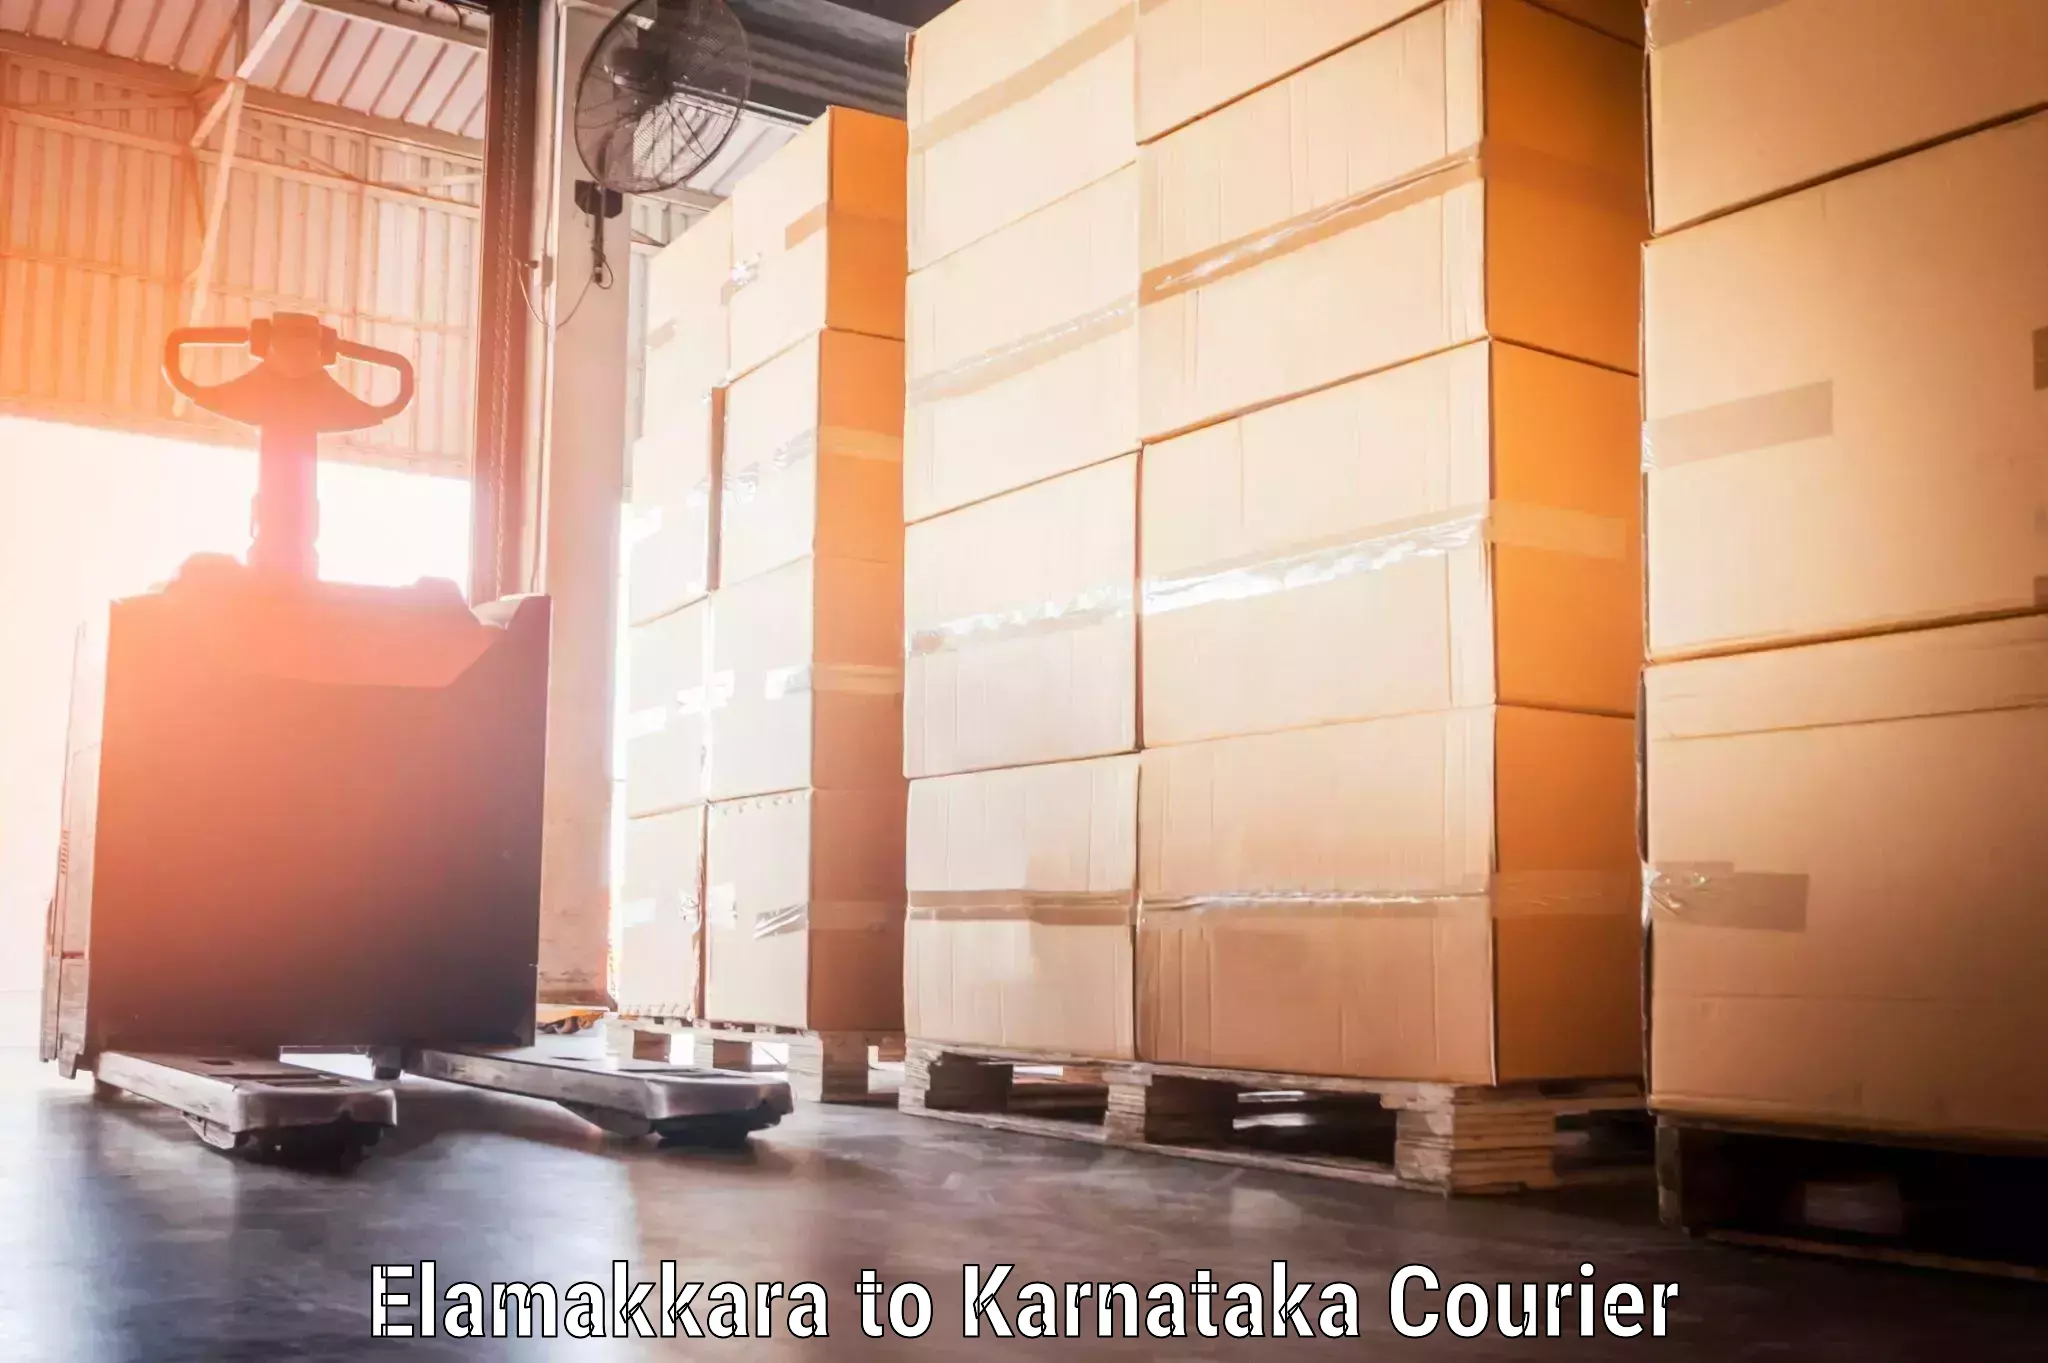 Baggage transport technology Elamakkara to Kittur